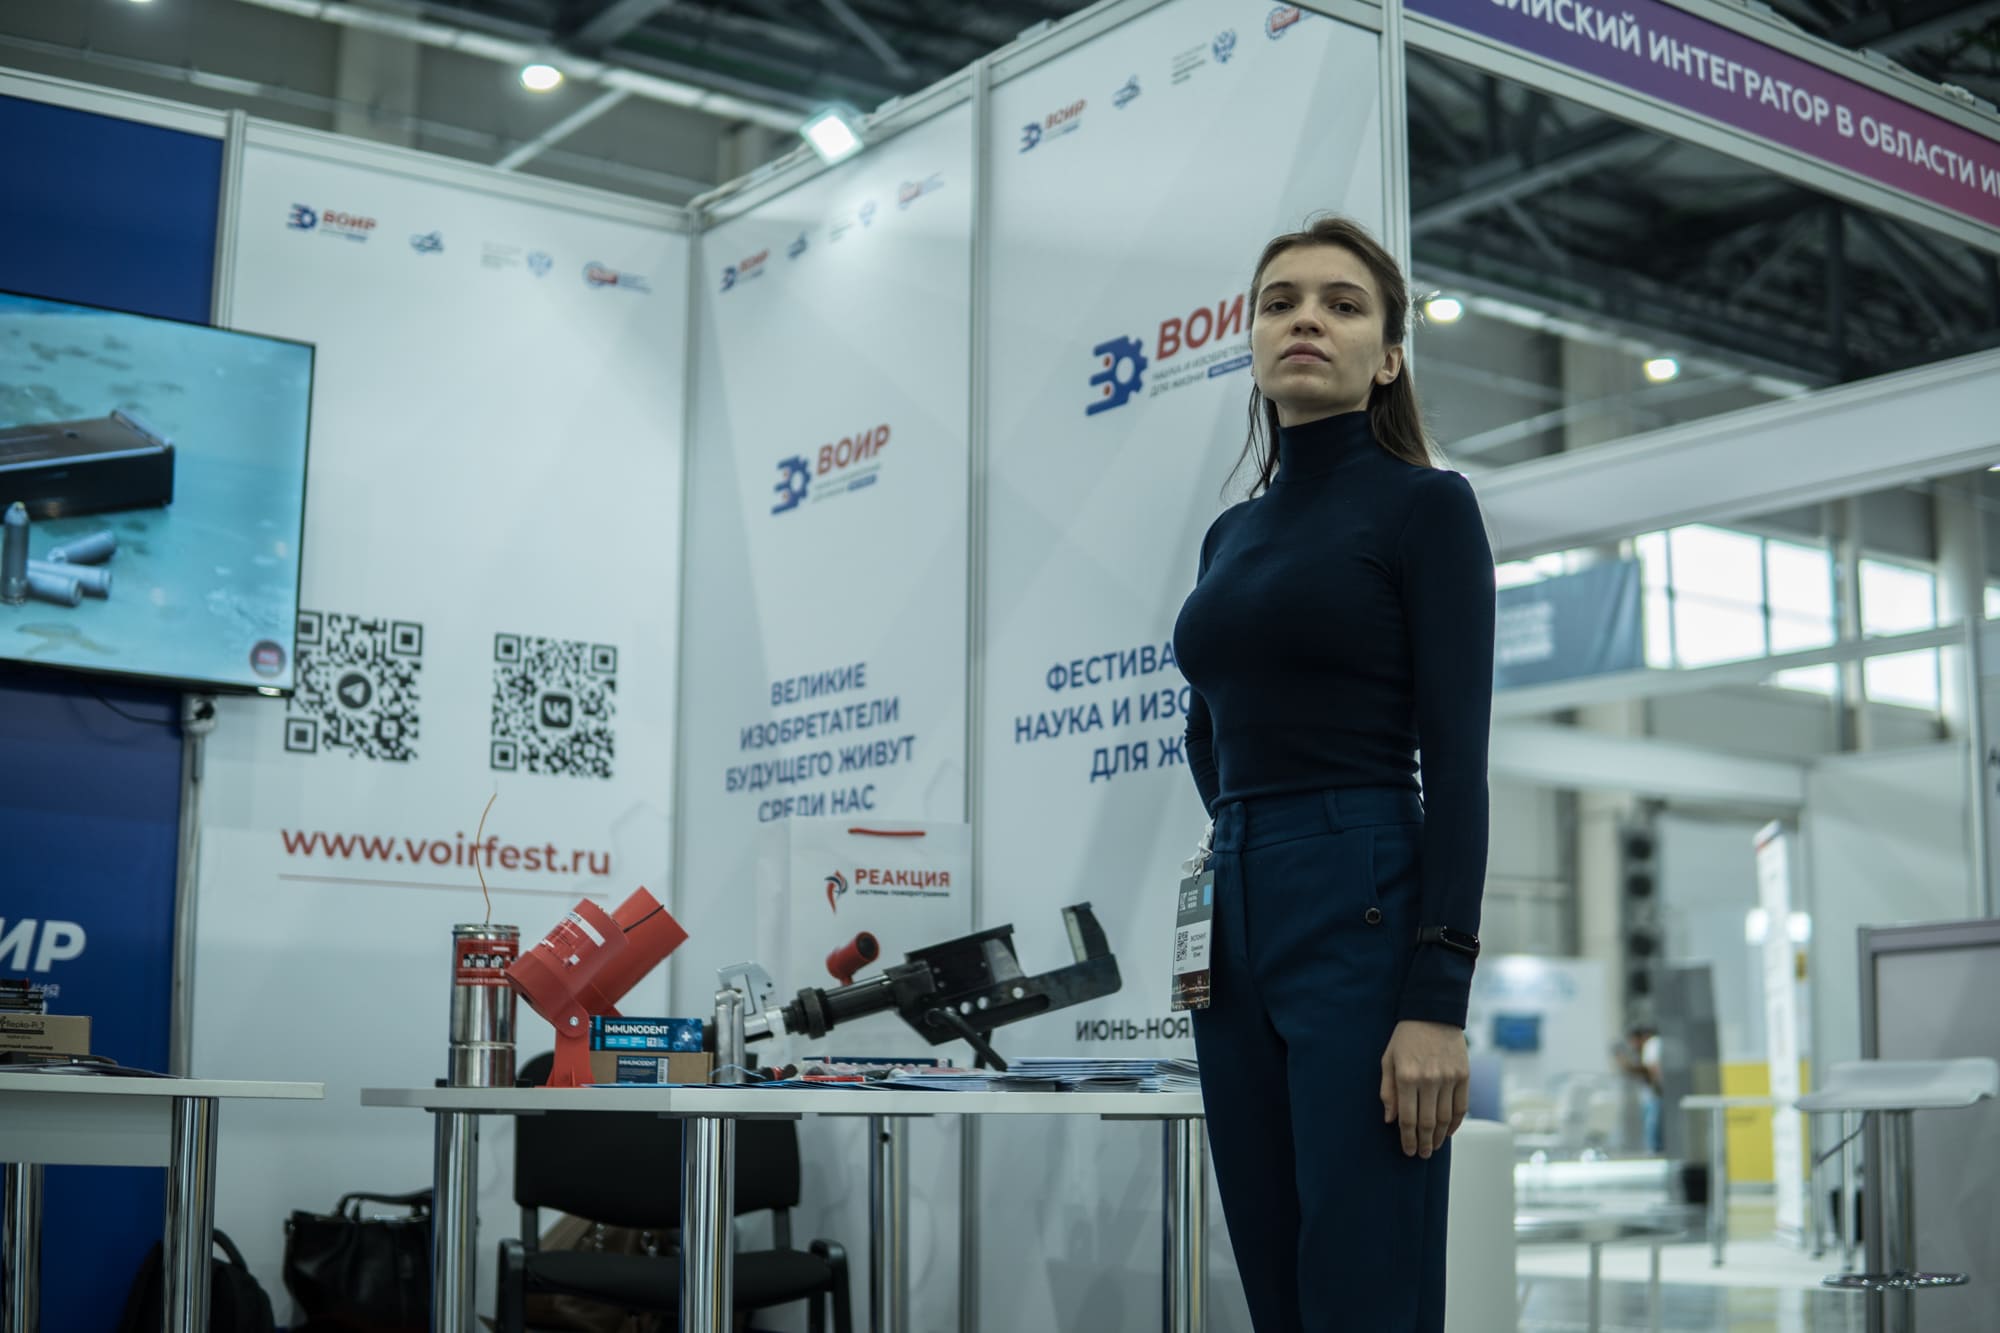  Фестиваль ВОИР: «Наука и изобретения для жизни»  на Международном форуме  Kazan Digital Week